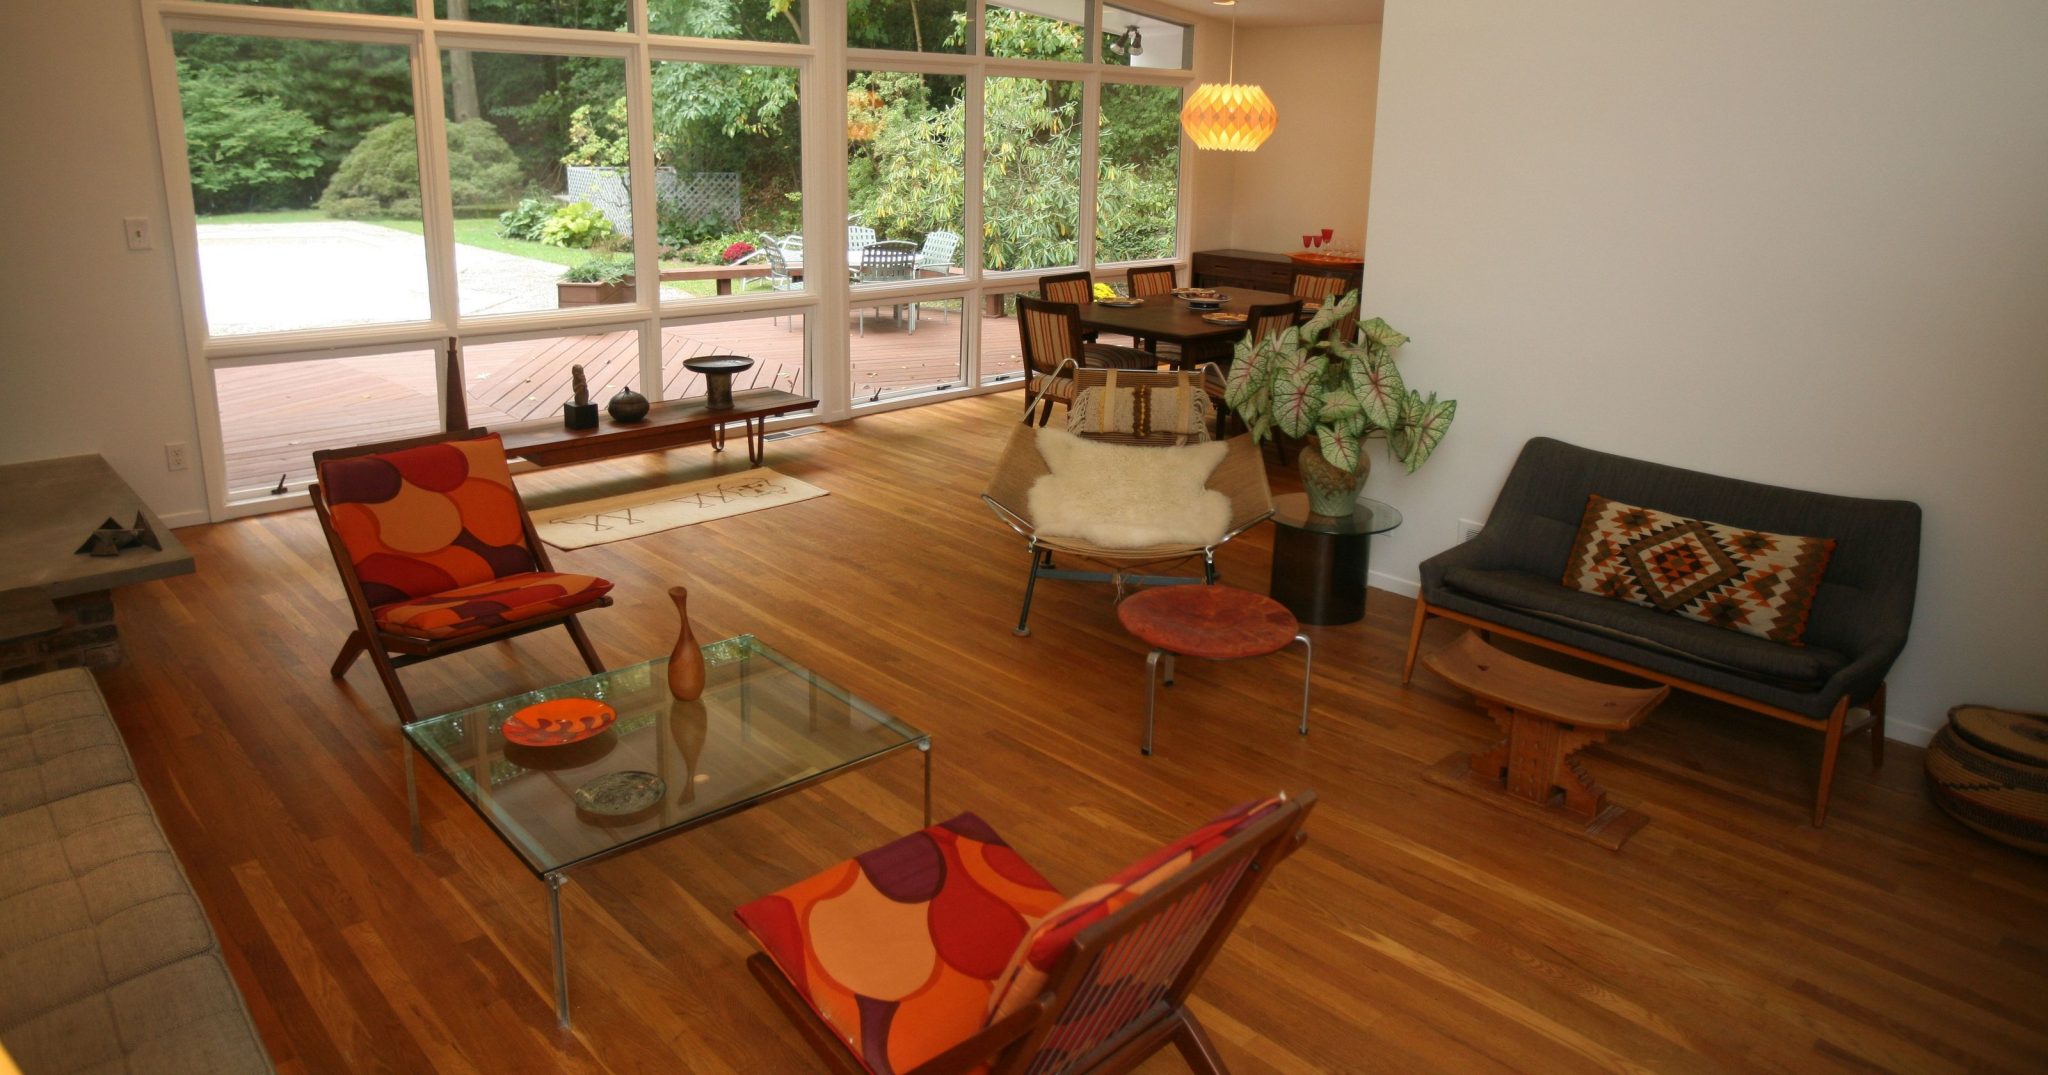 Exquisite mid-century living room